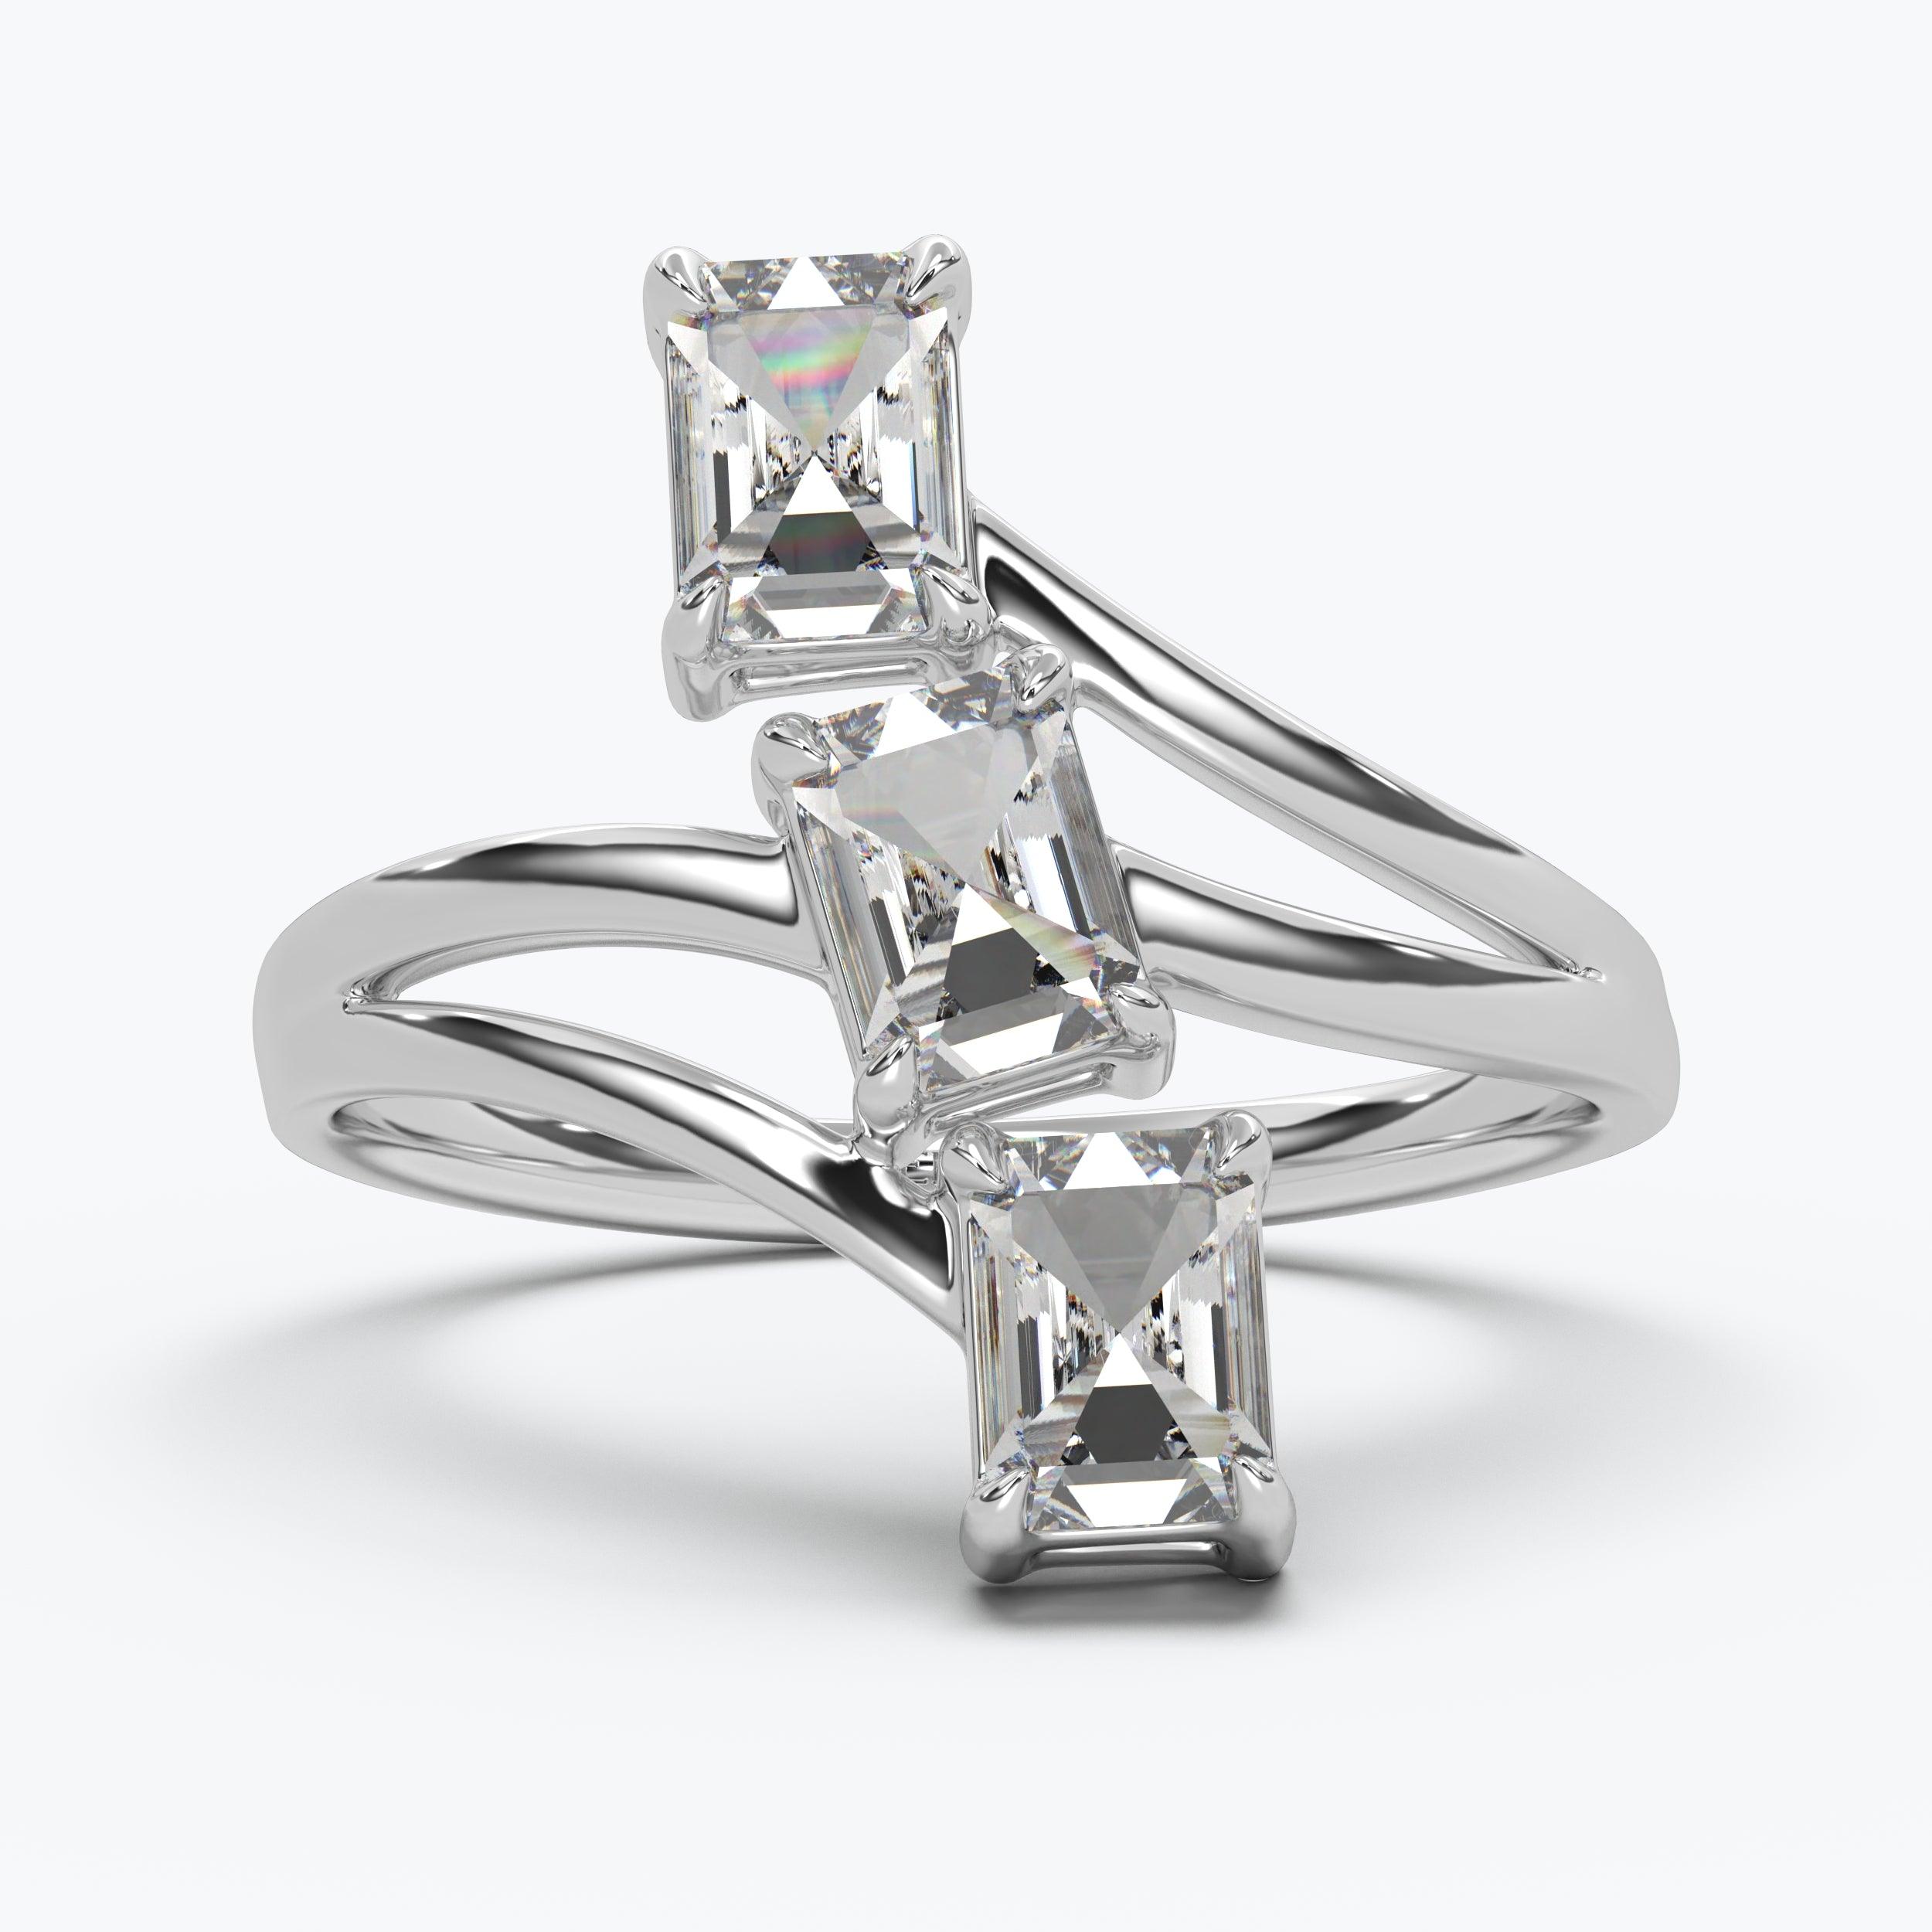 The Triune Emerald Cut - White Gold / 0.5 ct - Evermore Diamonds